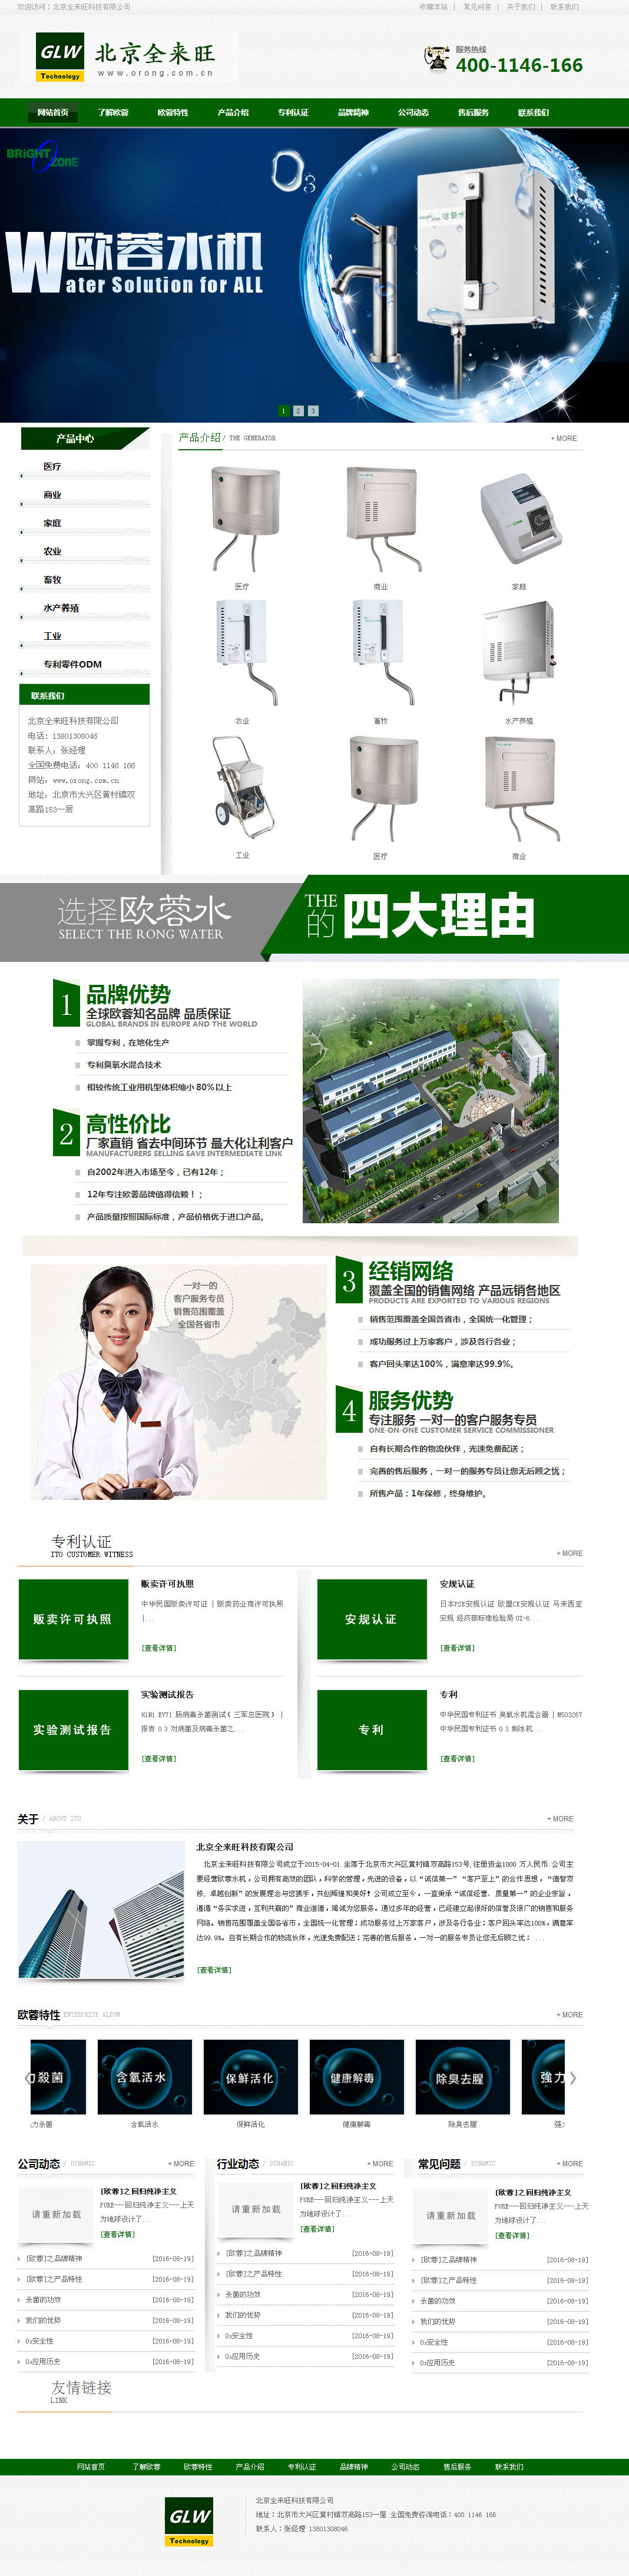 北京公司网站制作一条龙案例